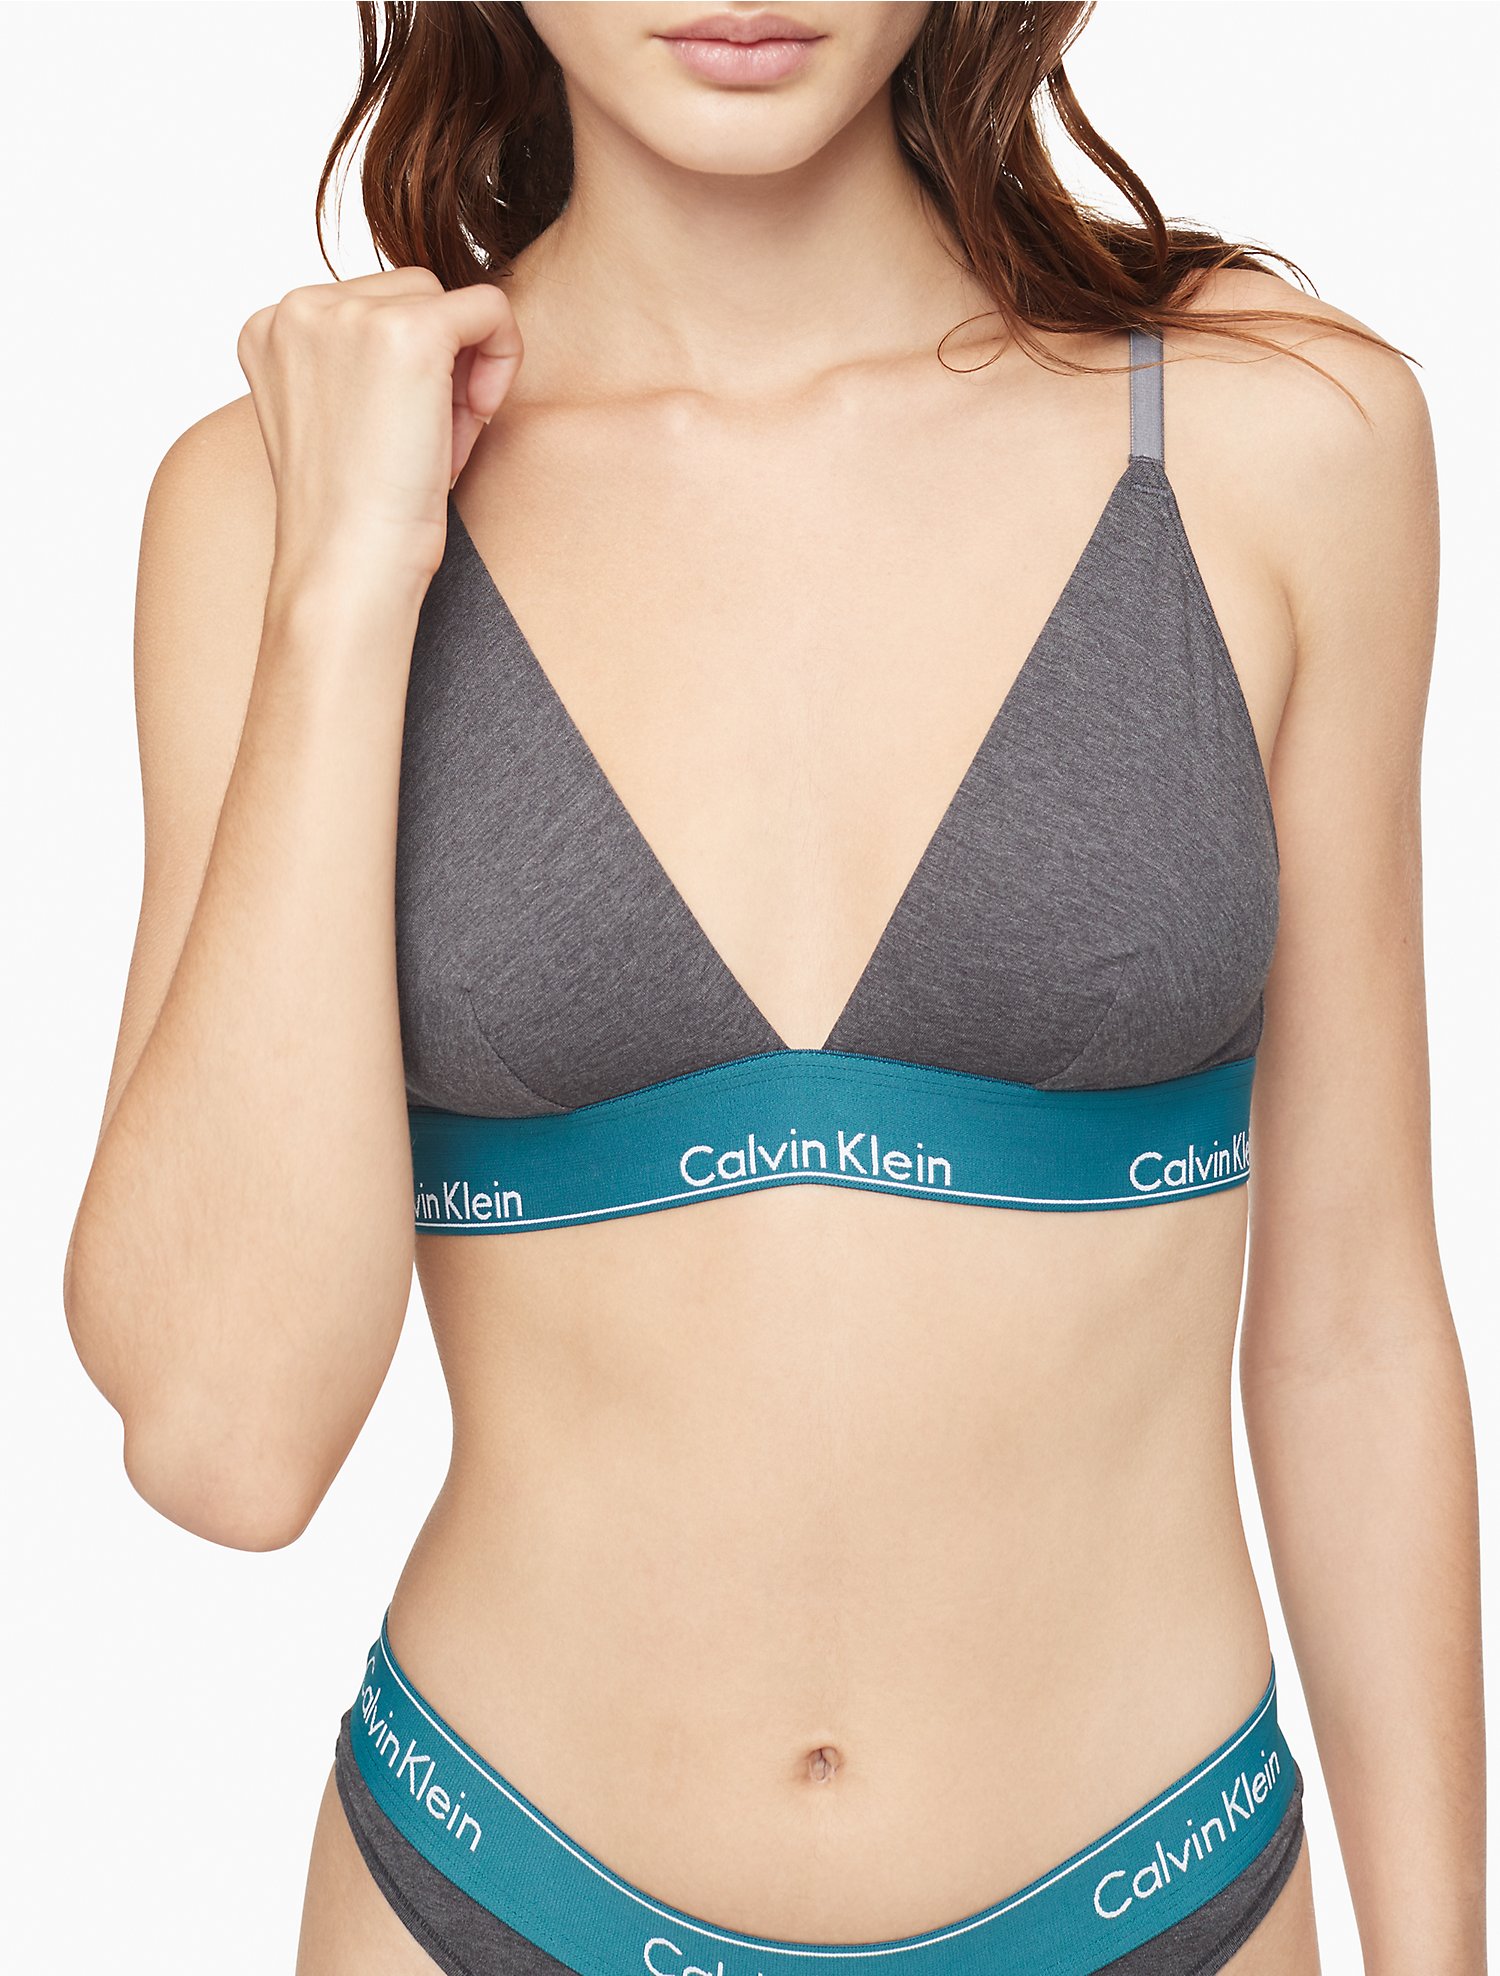 Modern Cotton Unlined Triangle Bralette Calvin Klein, 54% OFF